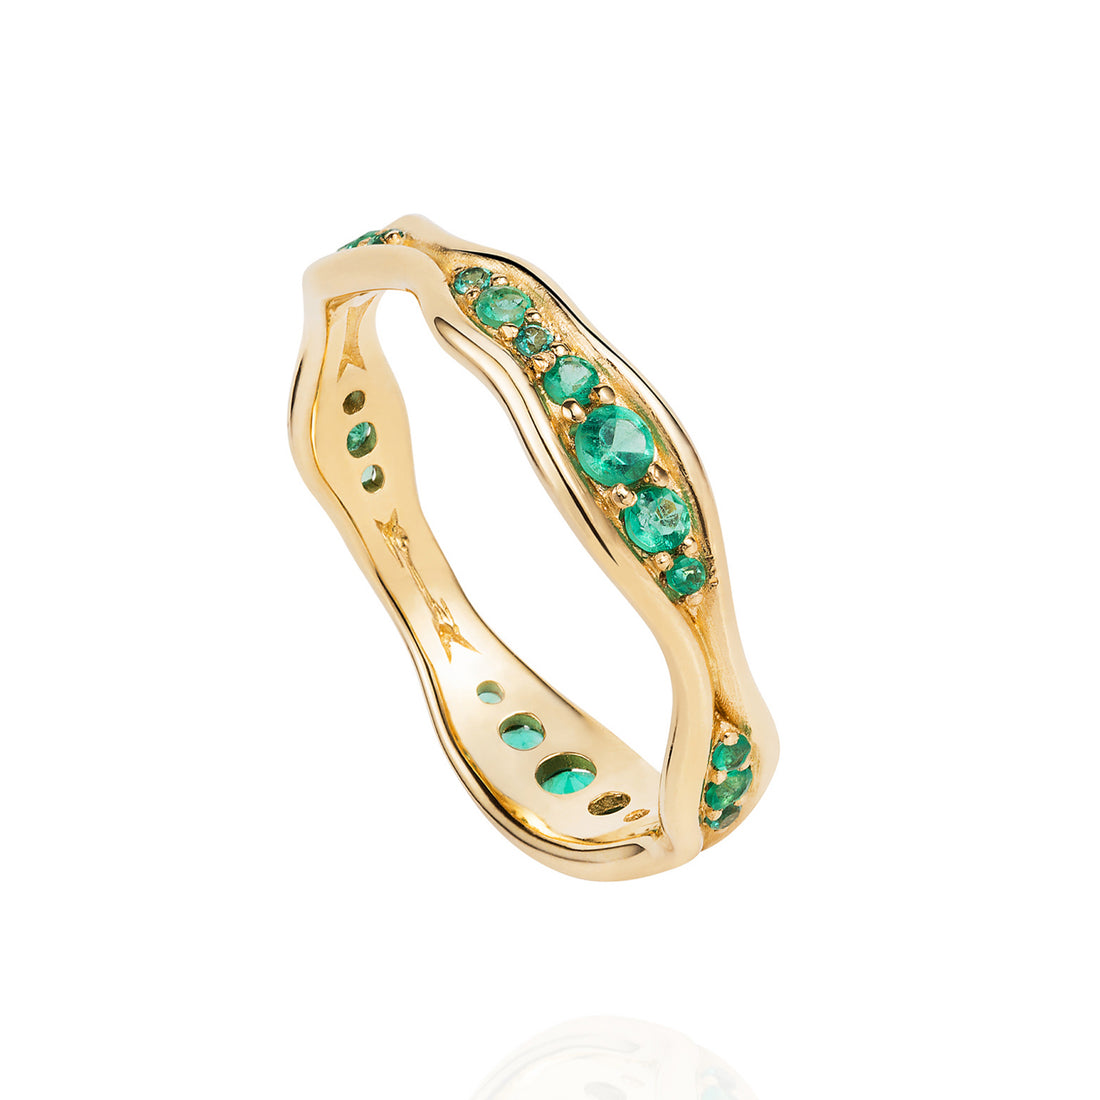  Emerald Fluid Ring by Fernando Jorge | The Cut London